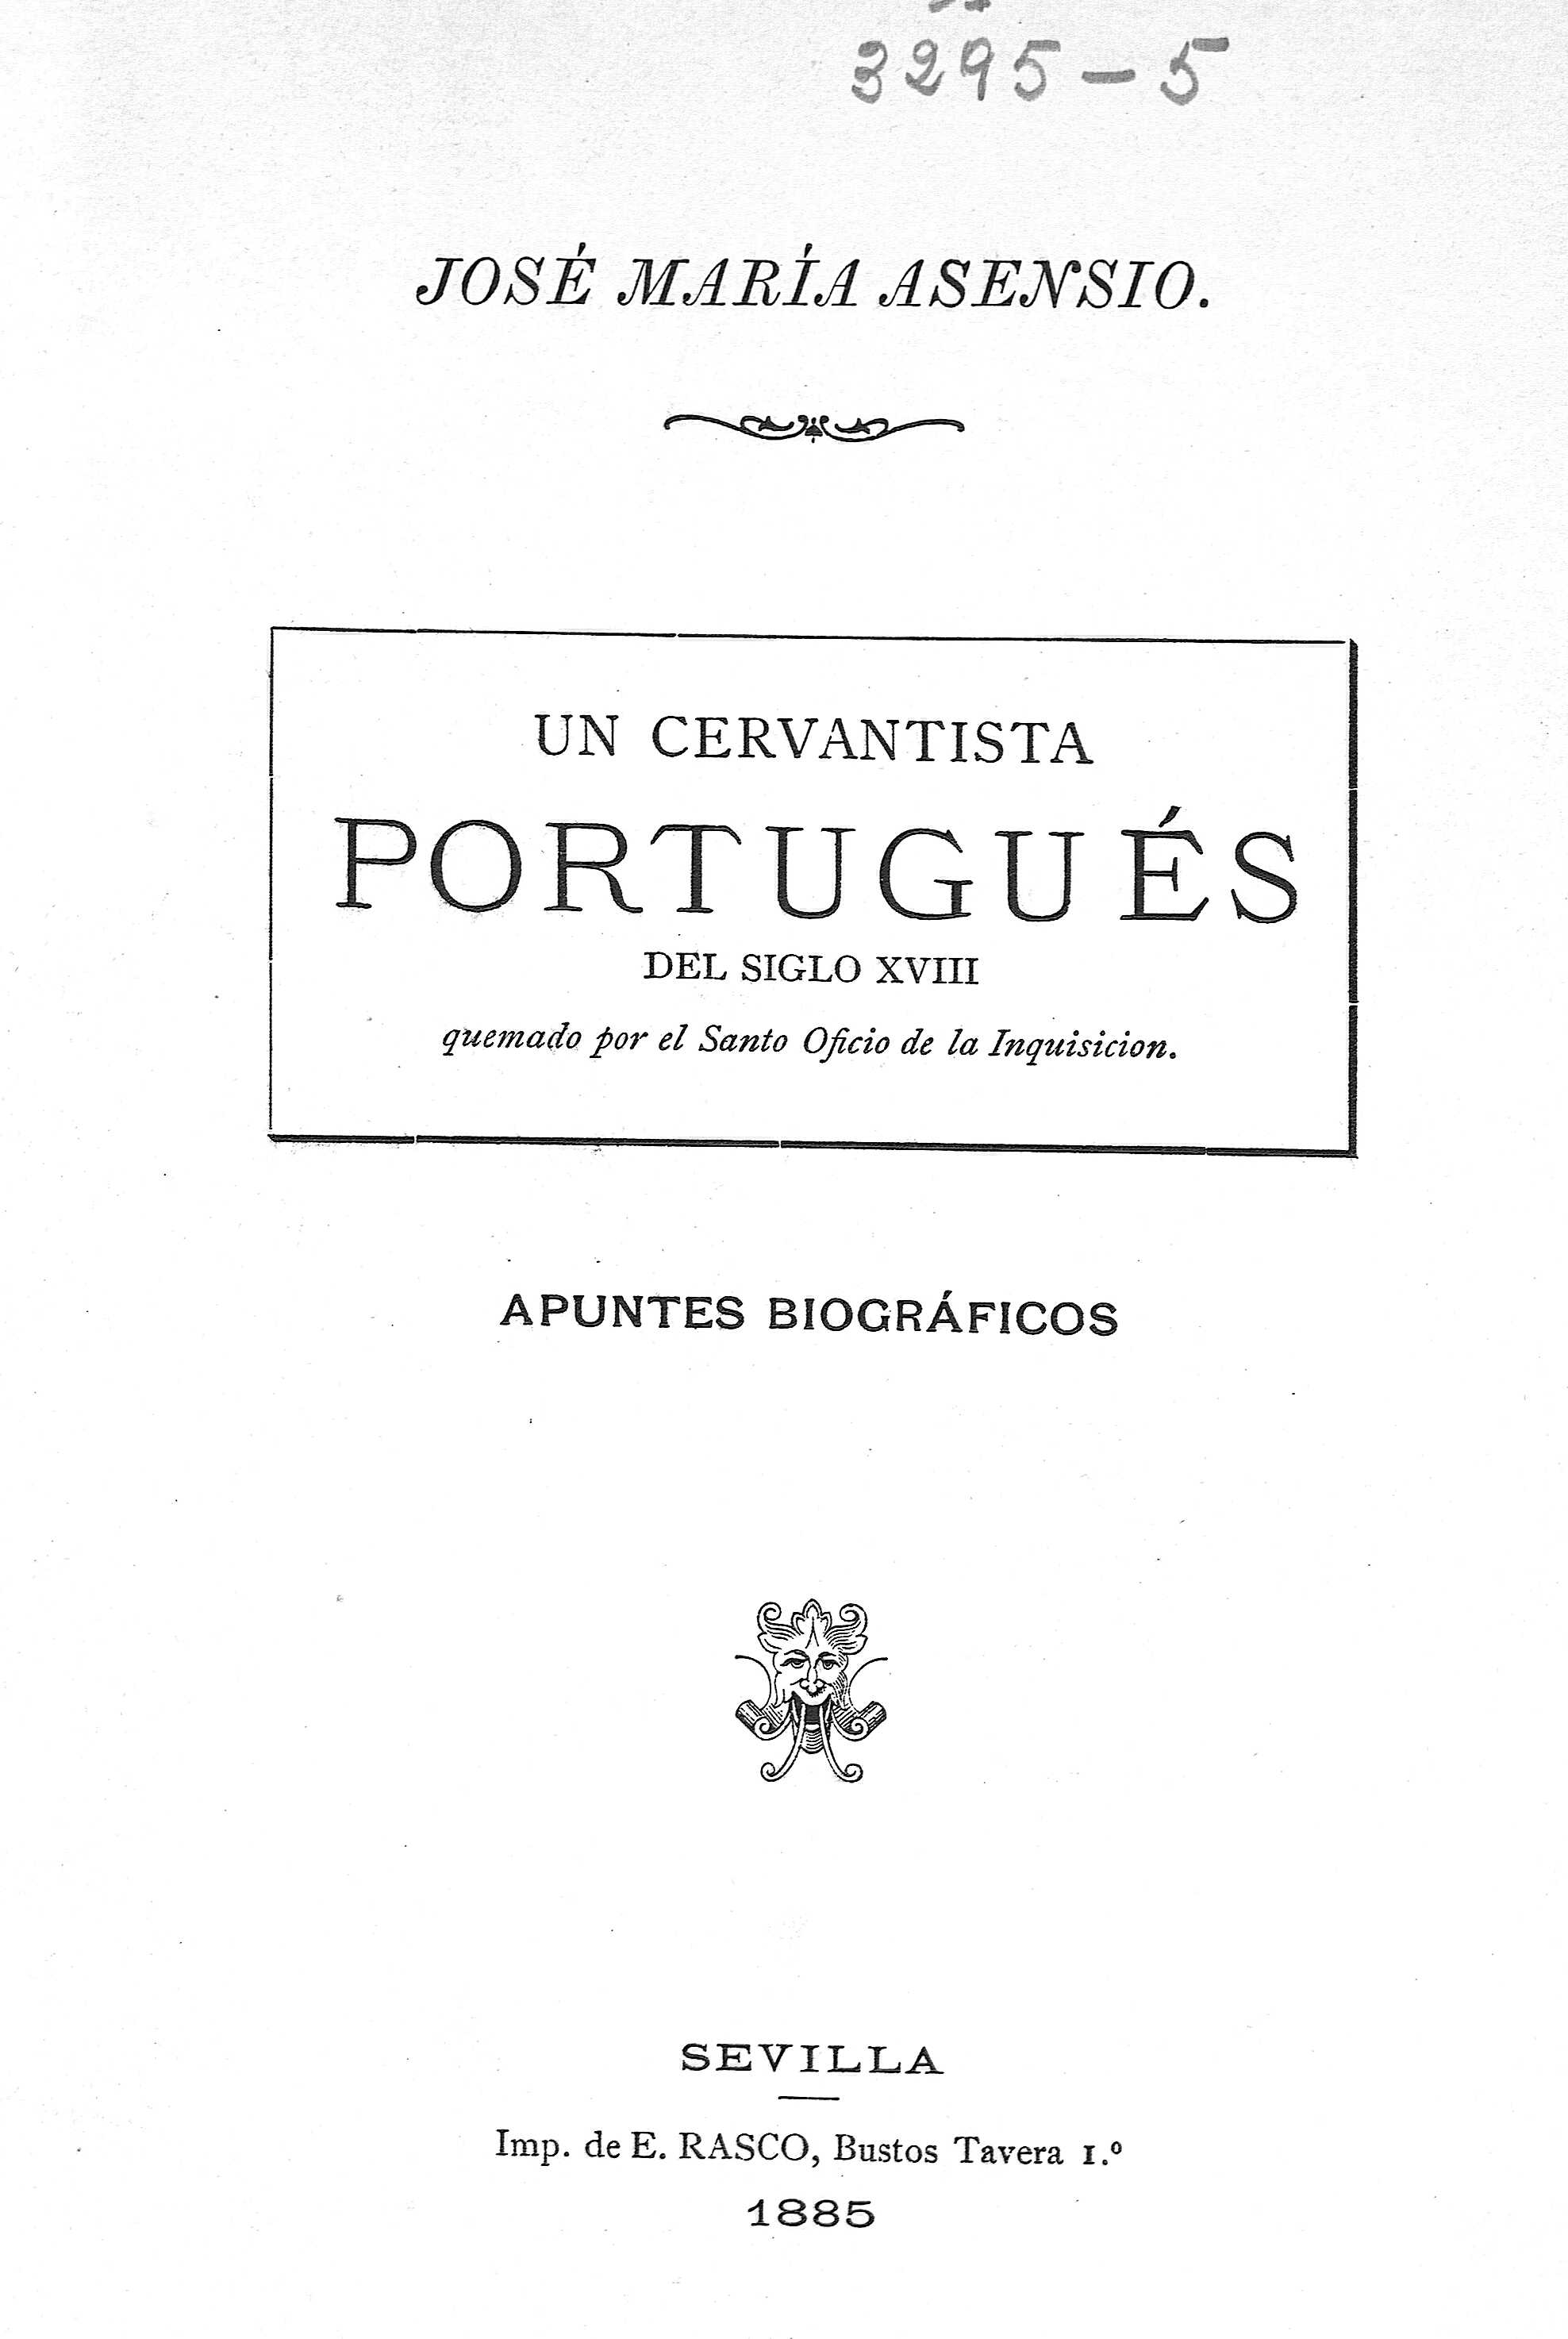 Un cervantista portugués del siglo XVIII. Apuntes biográficos